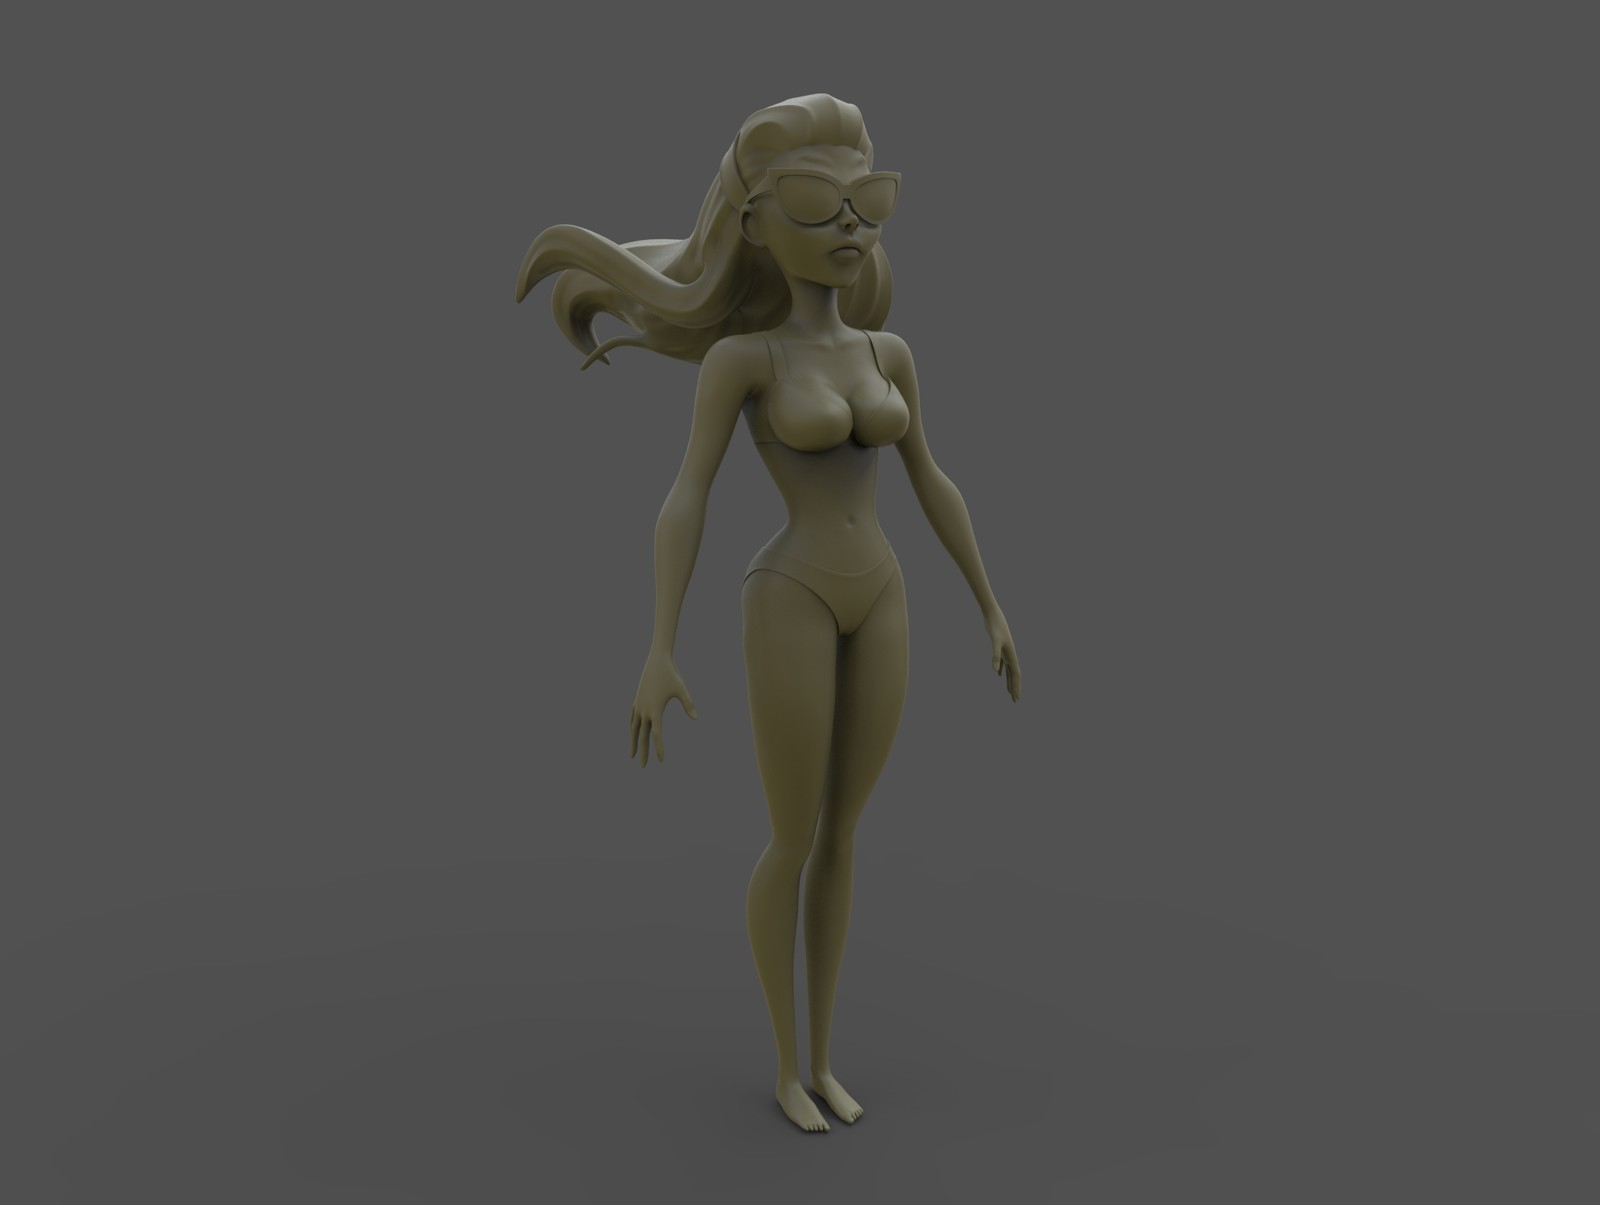 Keyshot render of the girl model.